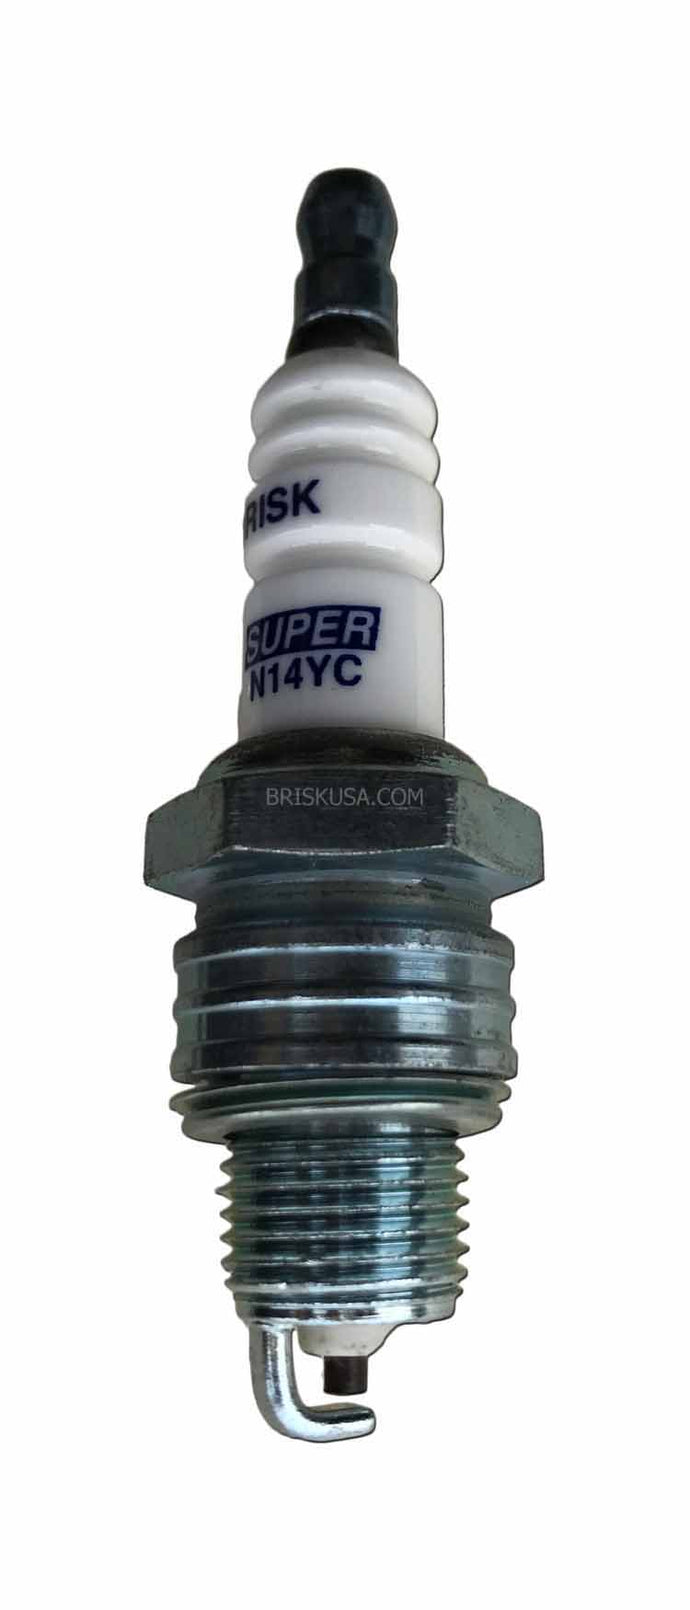 Super Racing N14YC Spark Plug